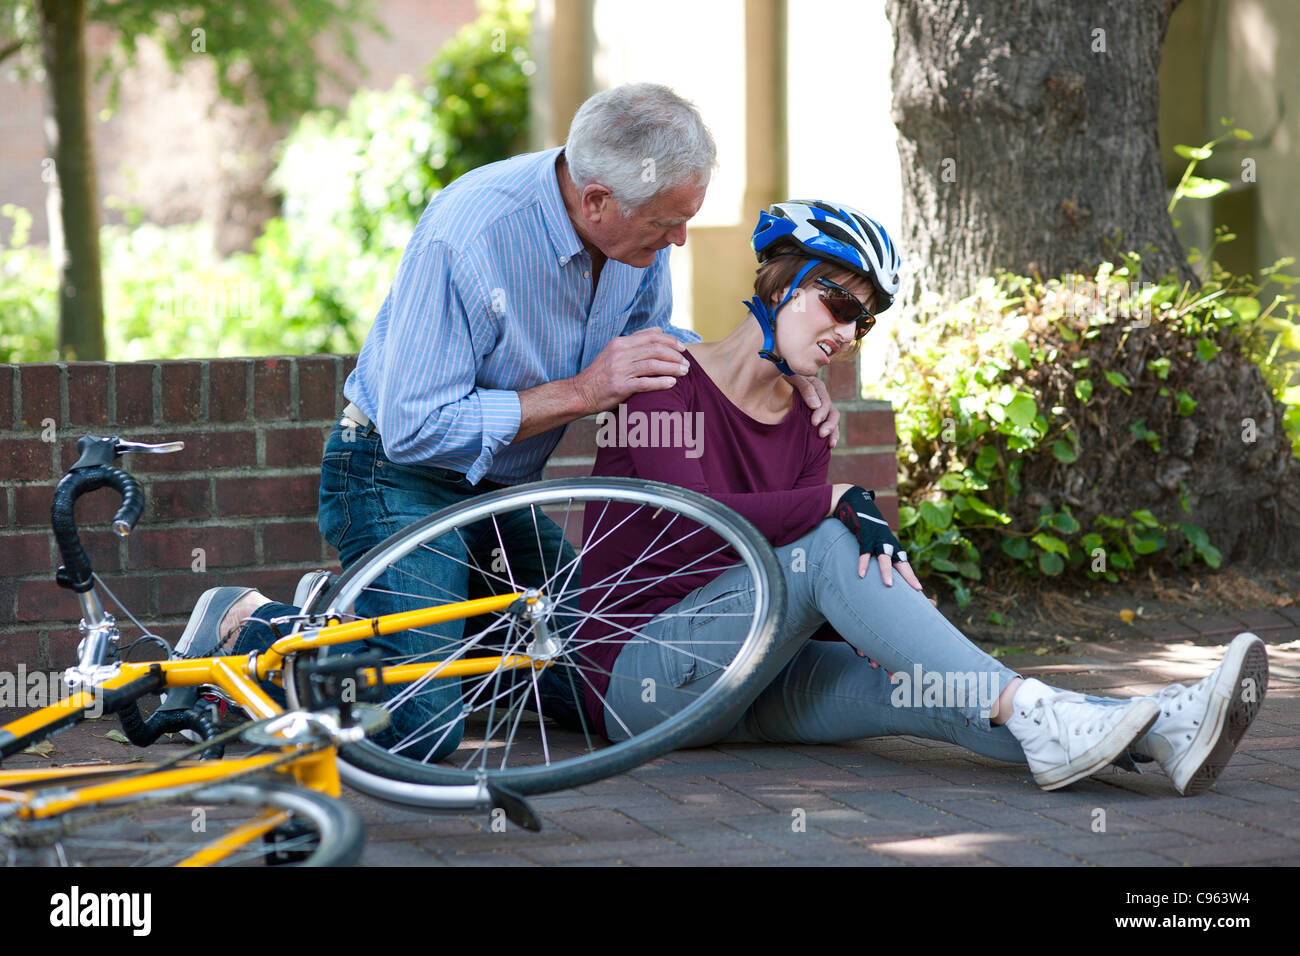 Fahrradunfall. Menschen helfen, einen Radfahrer, der vom Fahrrad gefallen  ist Stockfotografie - Alamy